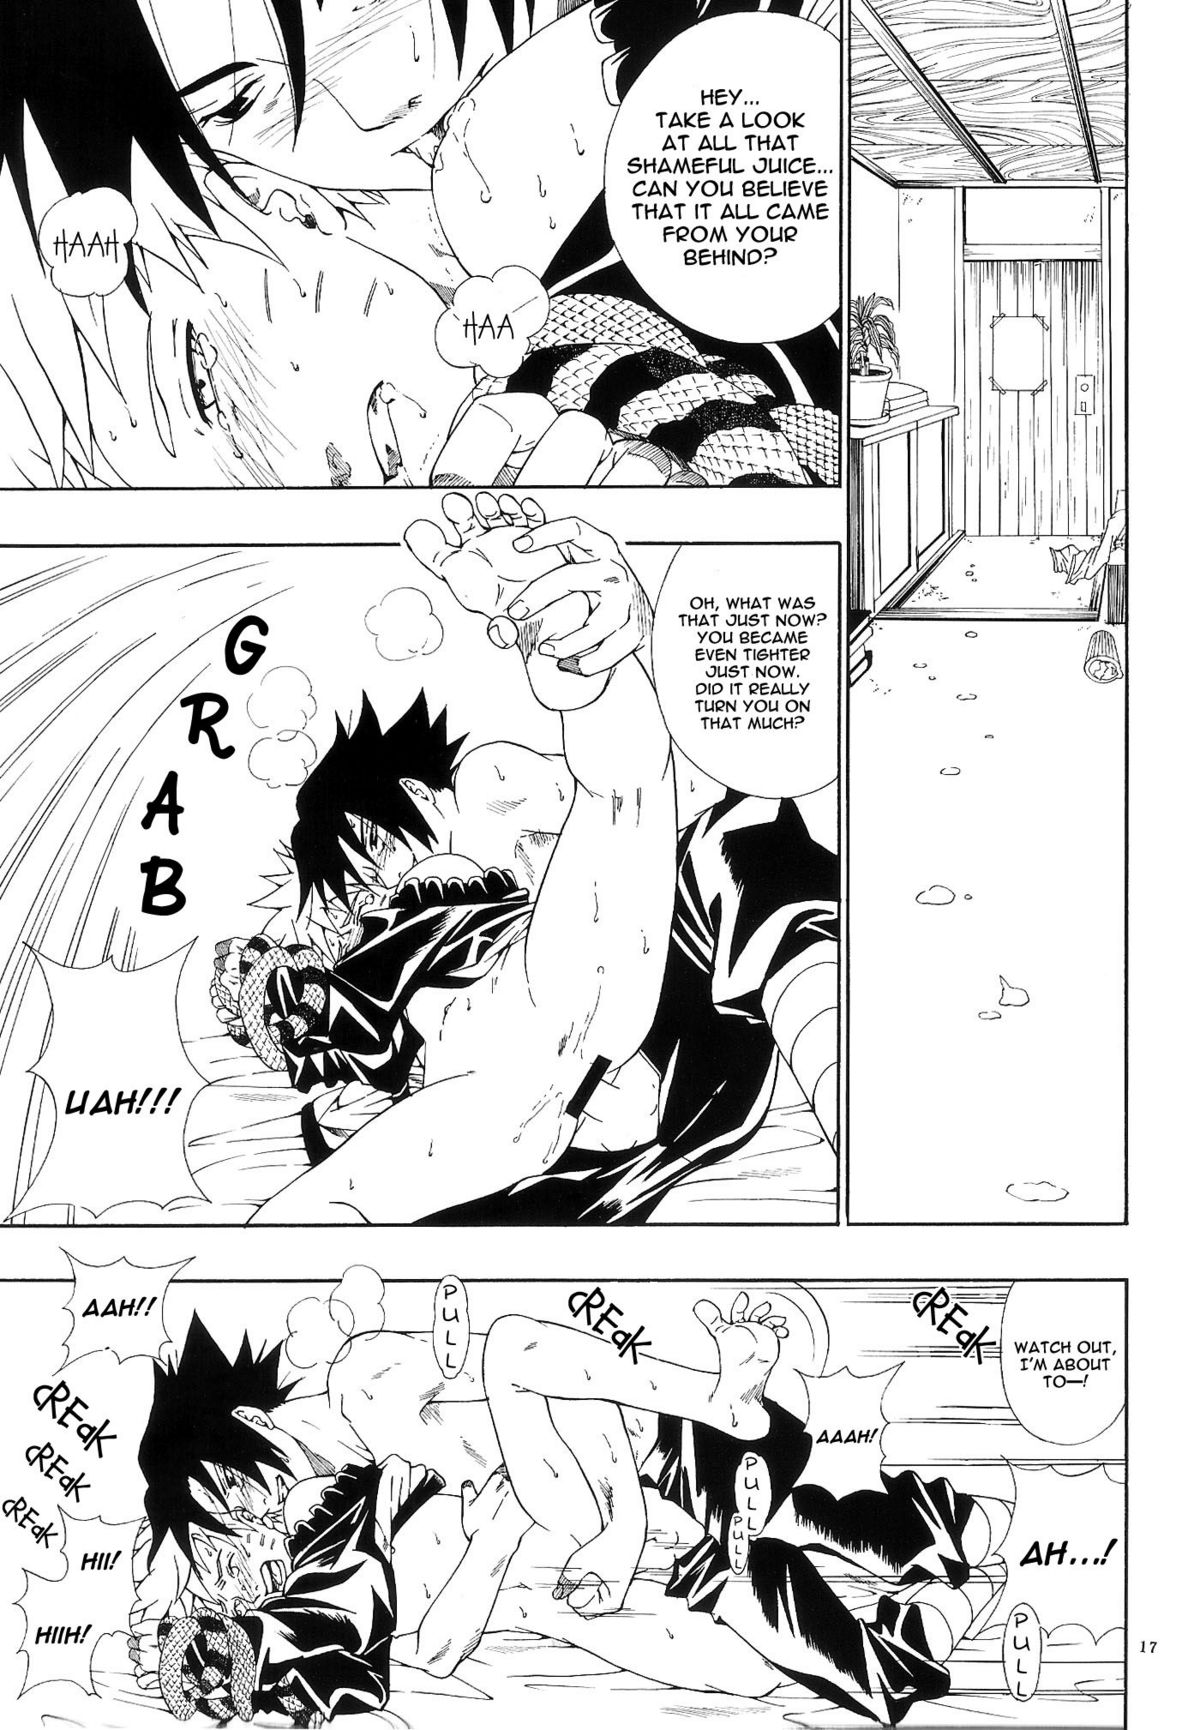 ERO ERO²: Volume 1.5  (NARUTO) [Sasuke X Naruto] YAOI -ENG- page 16 full